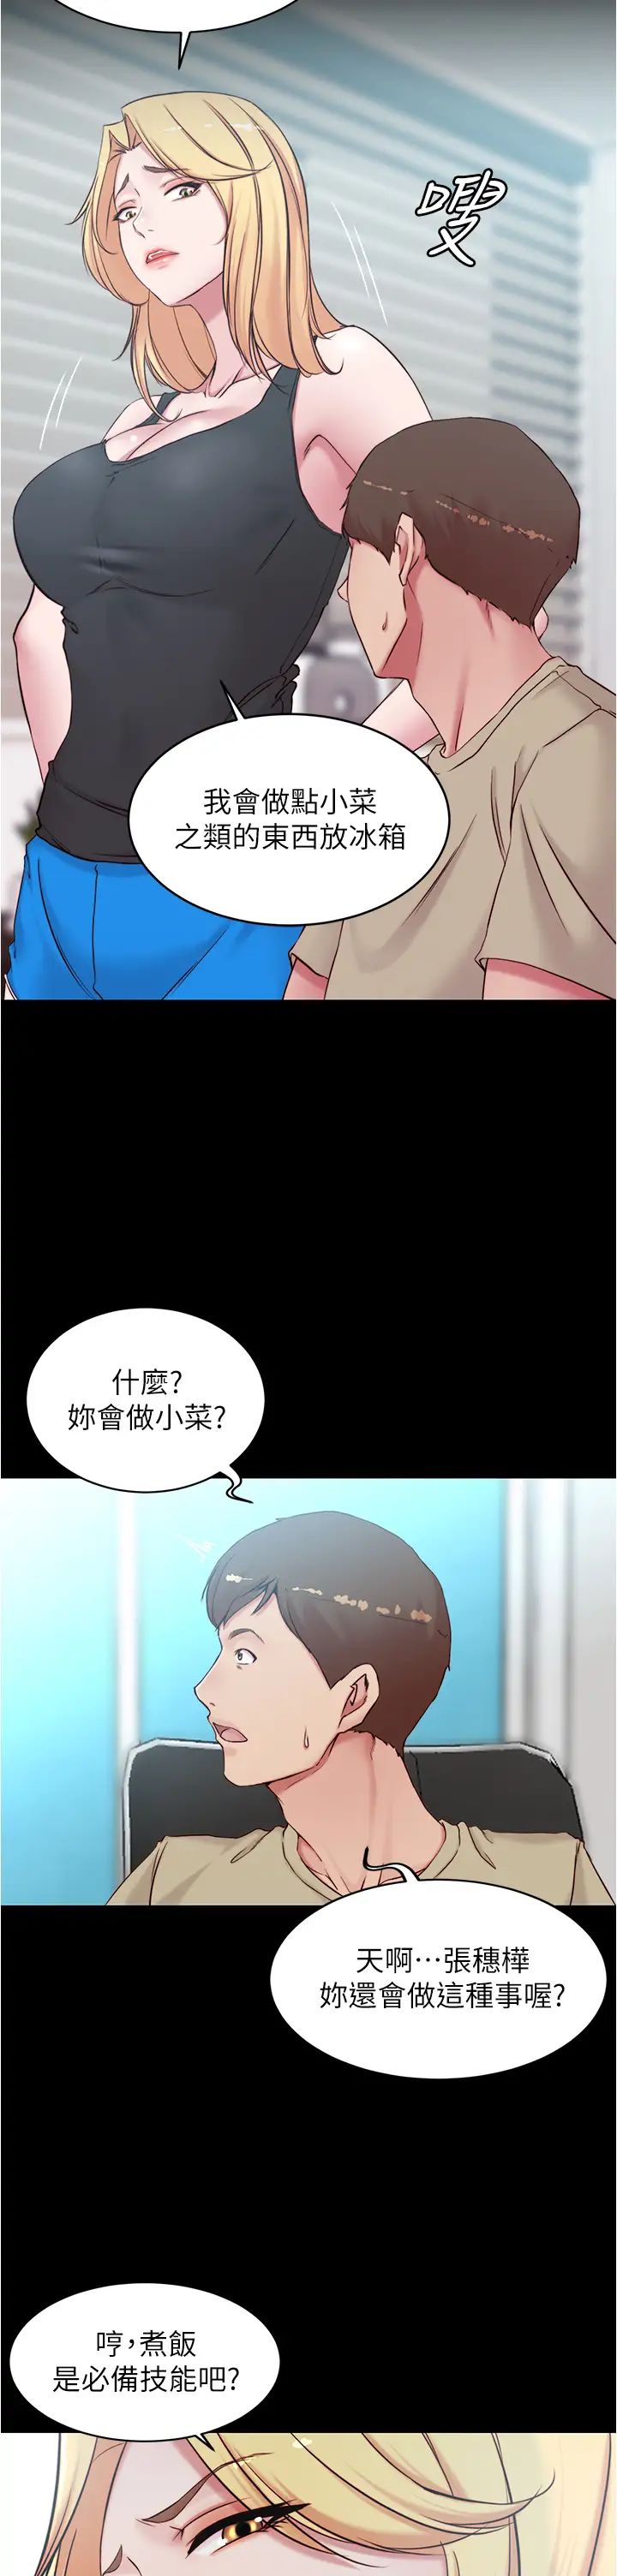 韩国污漫画 小褲褲筆記 第43话 好想看张穗桦的裸体…! 11